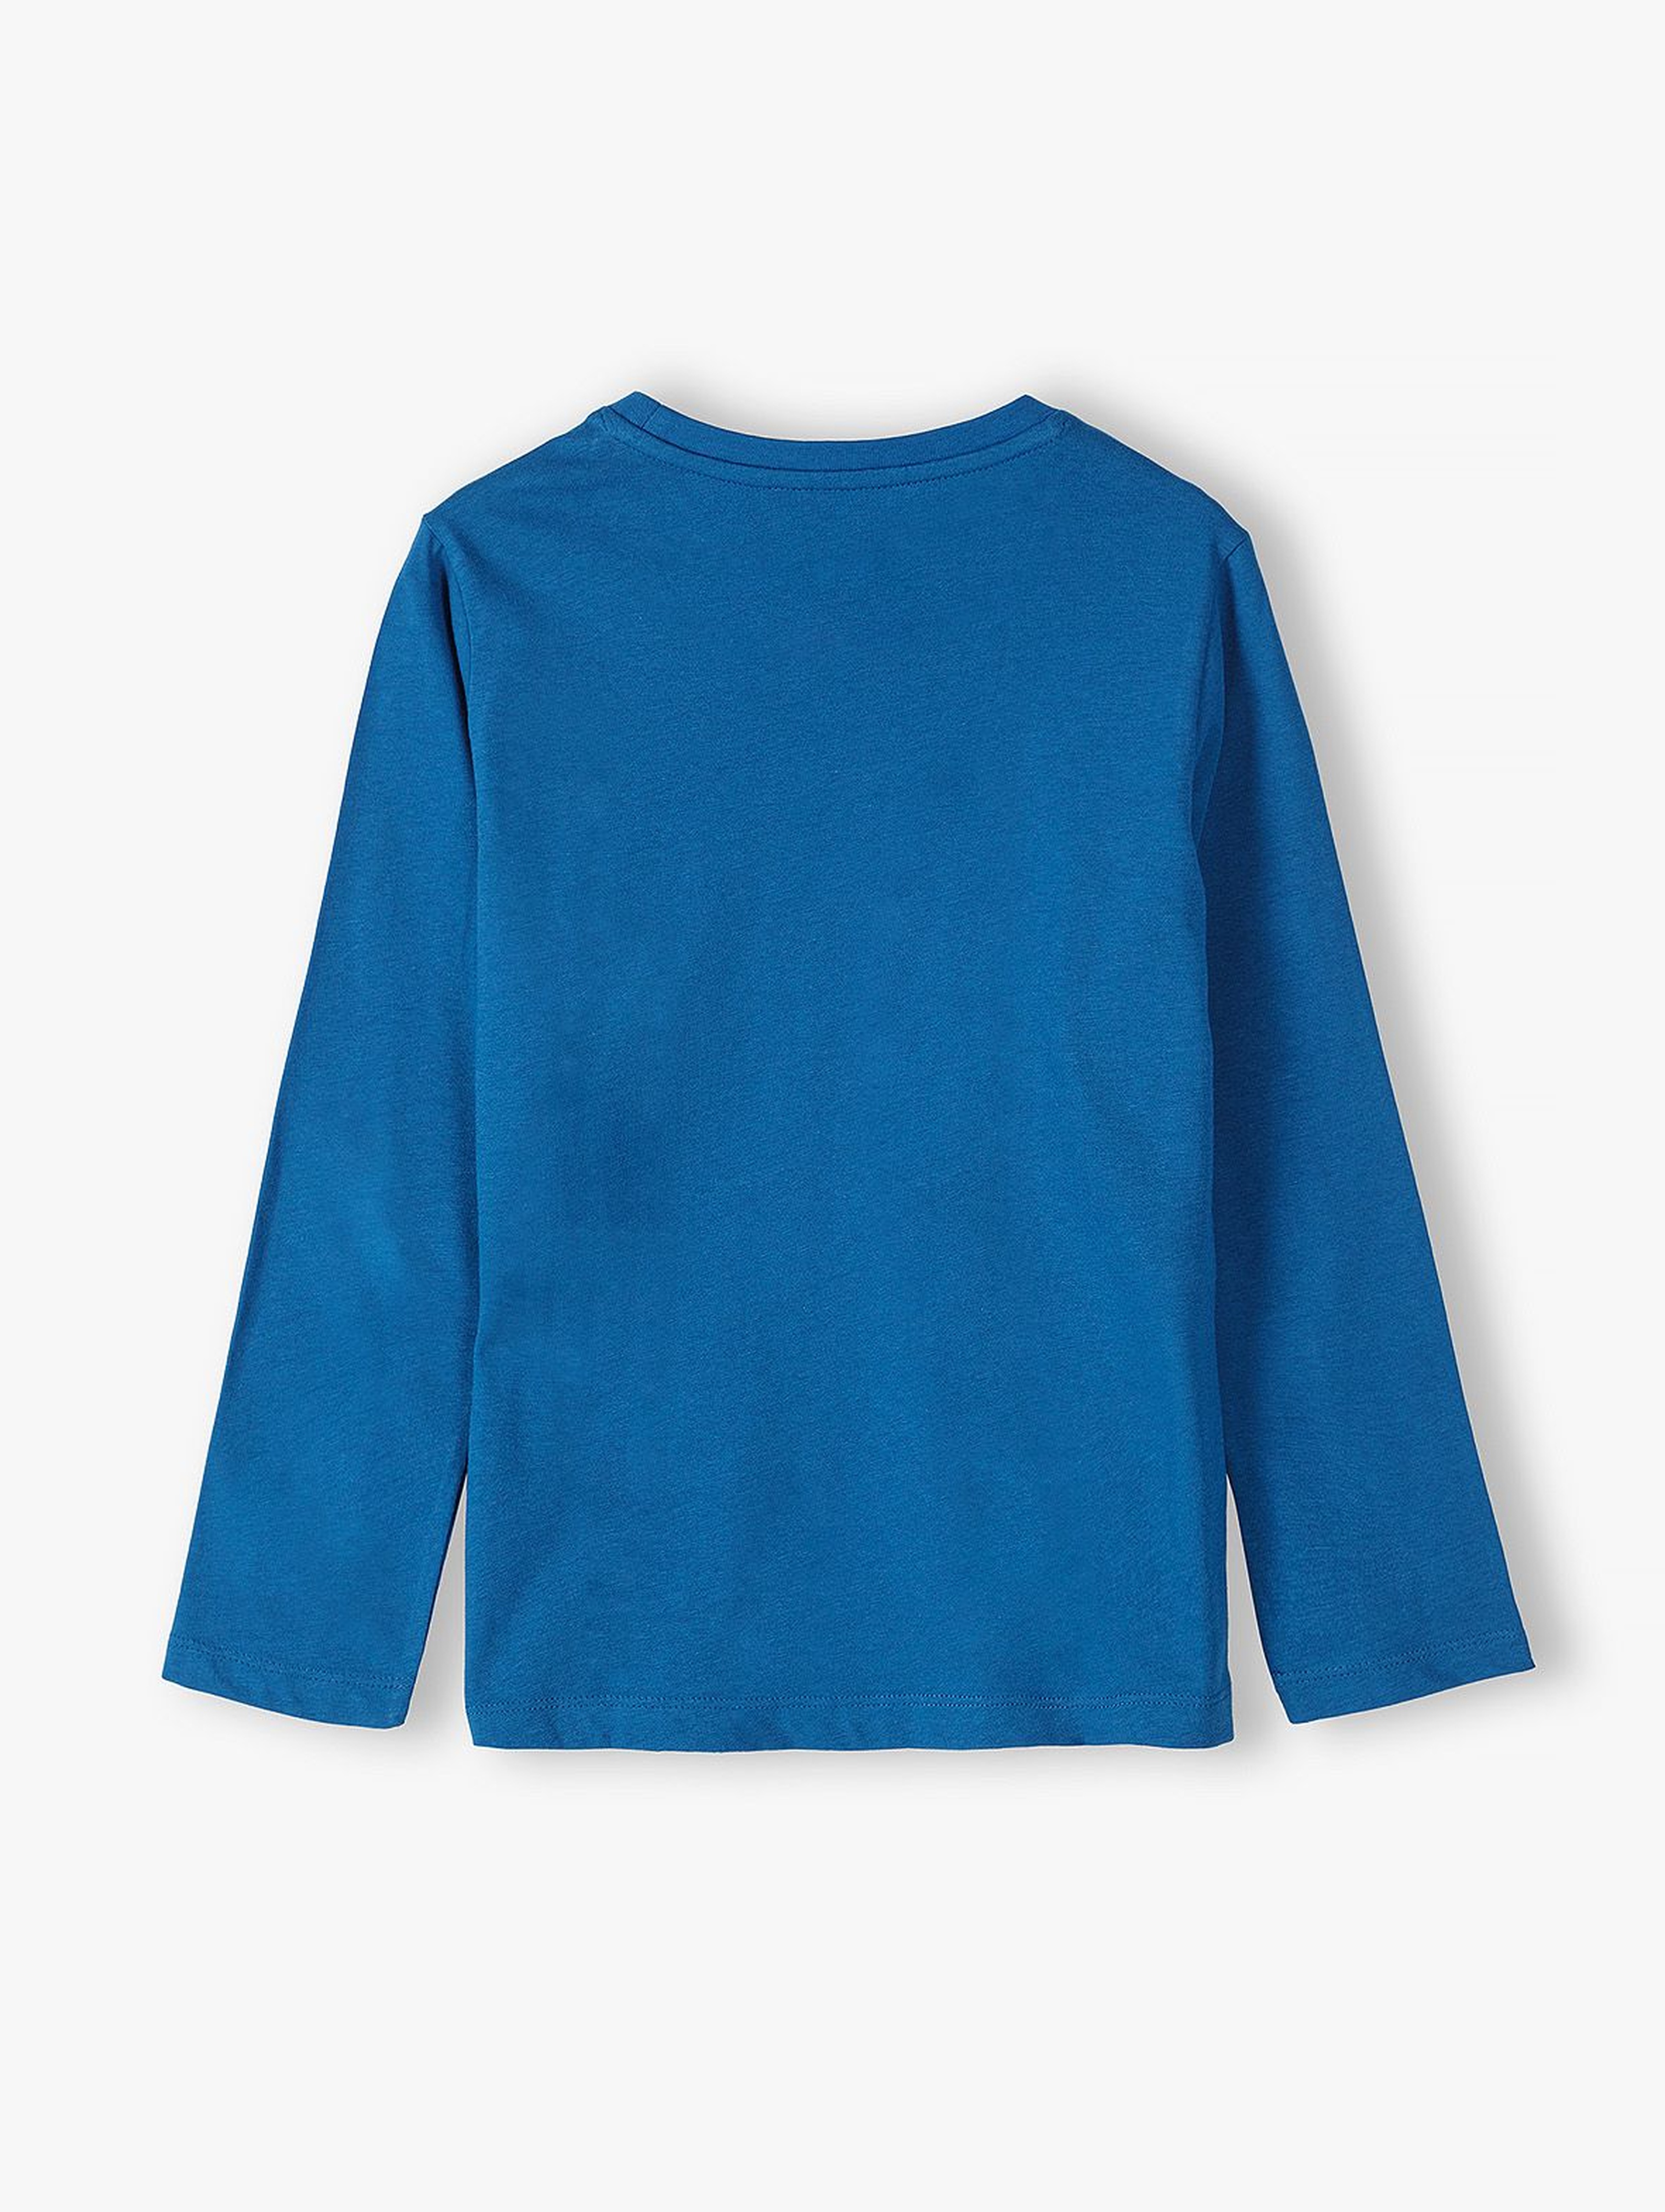 Bawełniana bluzka chłopięca z długim rękawem - niebieska z nadrukami